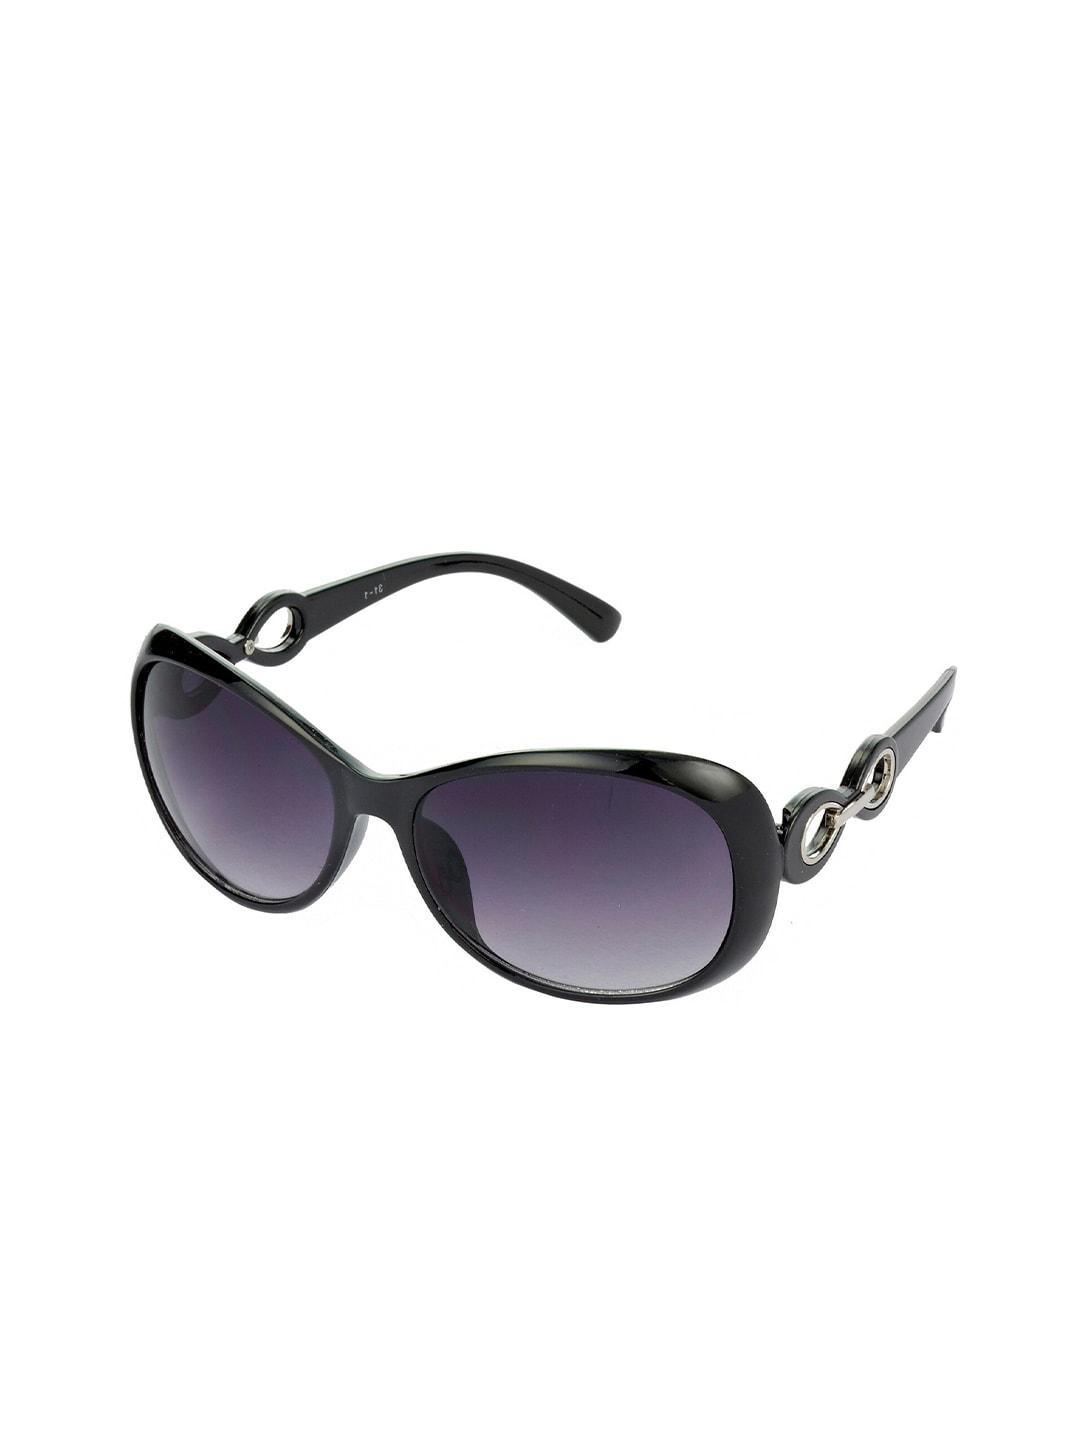 hrinkar women lens & butterfly sunglasses with uv protected lens